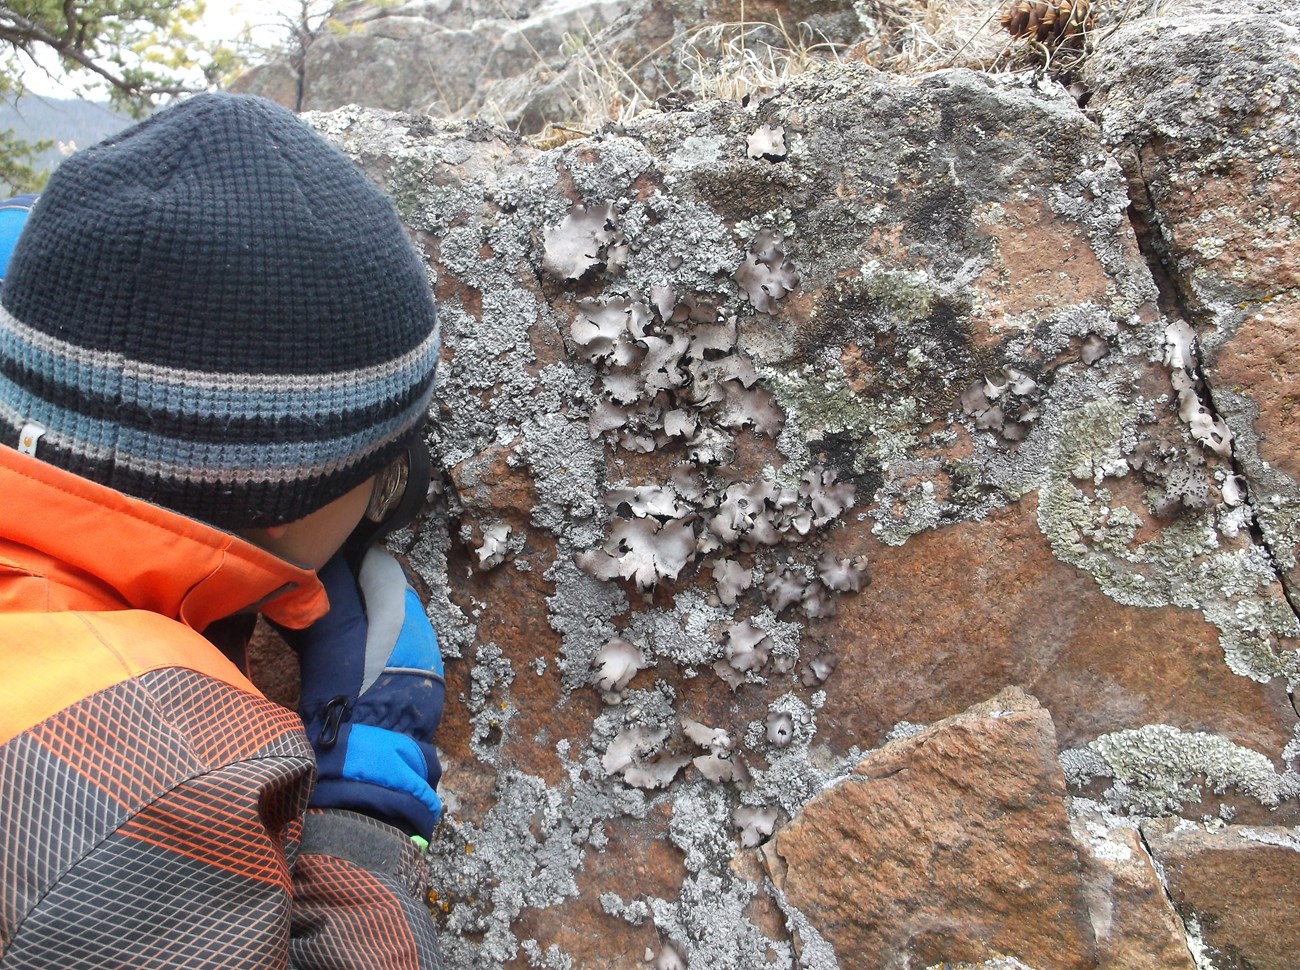 Student investigates lichen on a rock